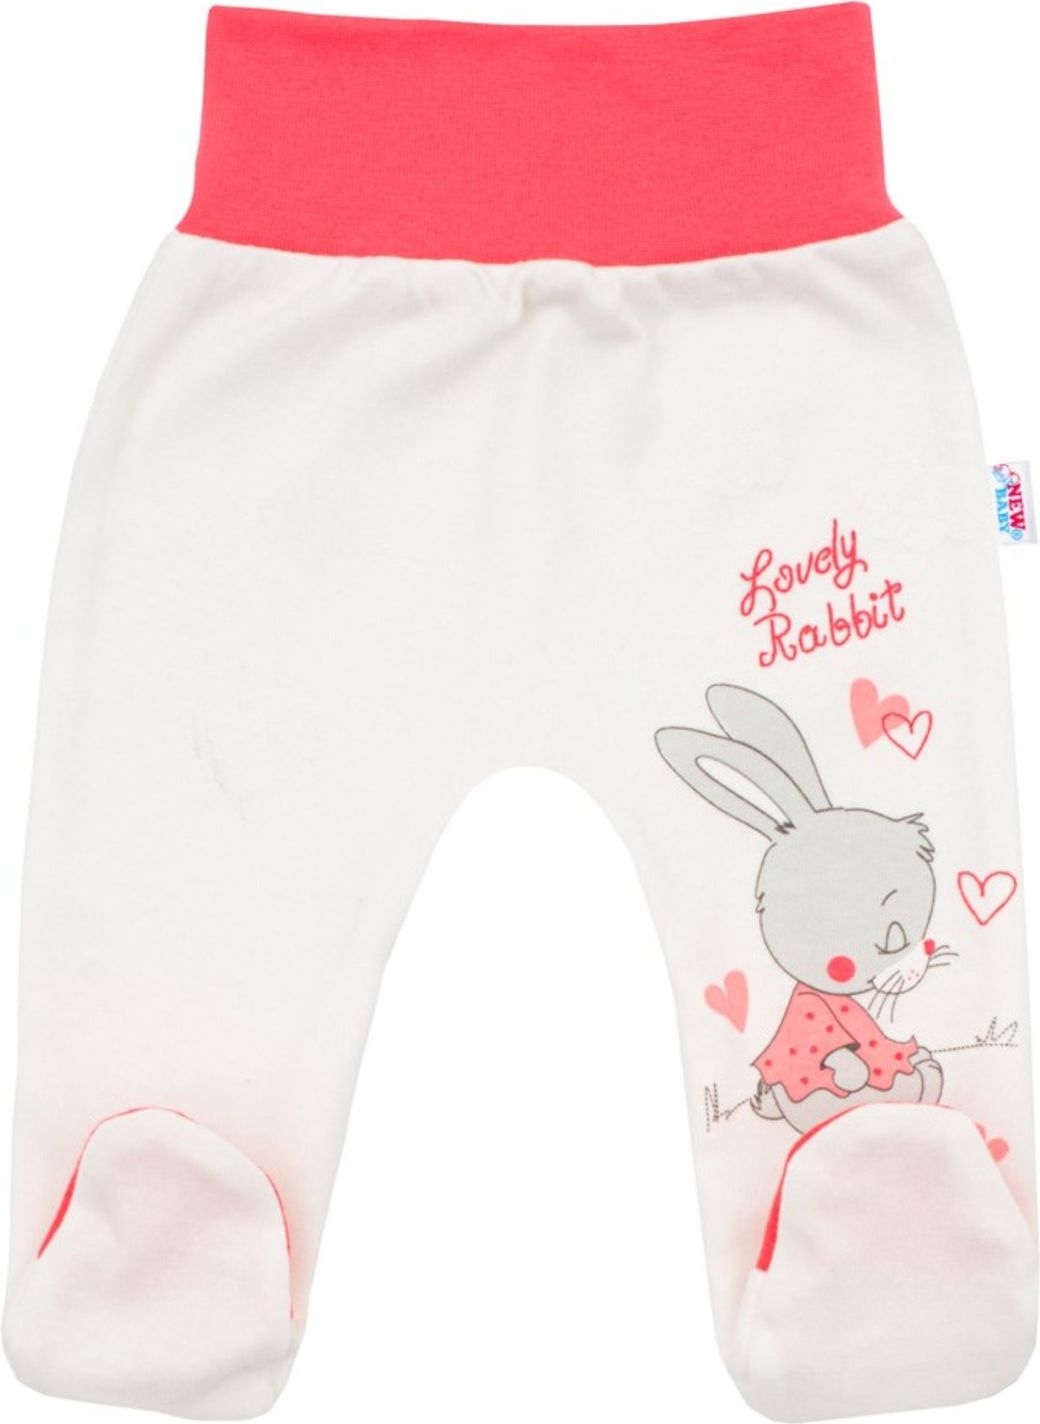 Dětské polodupačky New Baby Lovely Rabbit růžové - Dětské polodupačky New Baby Lovely Rabbit růžové - obrázek 1